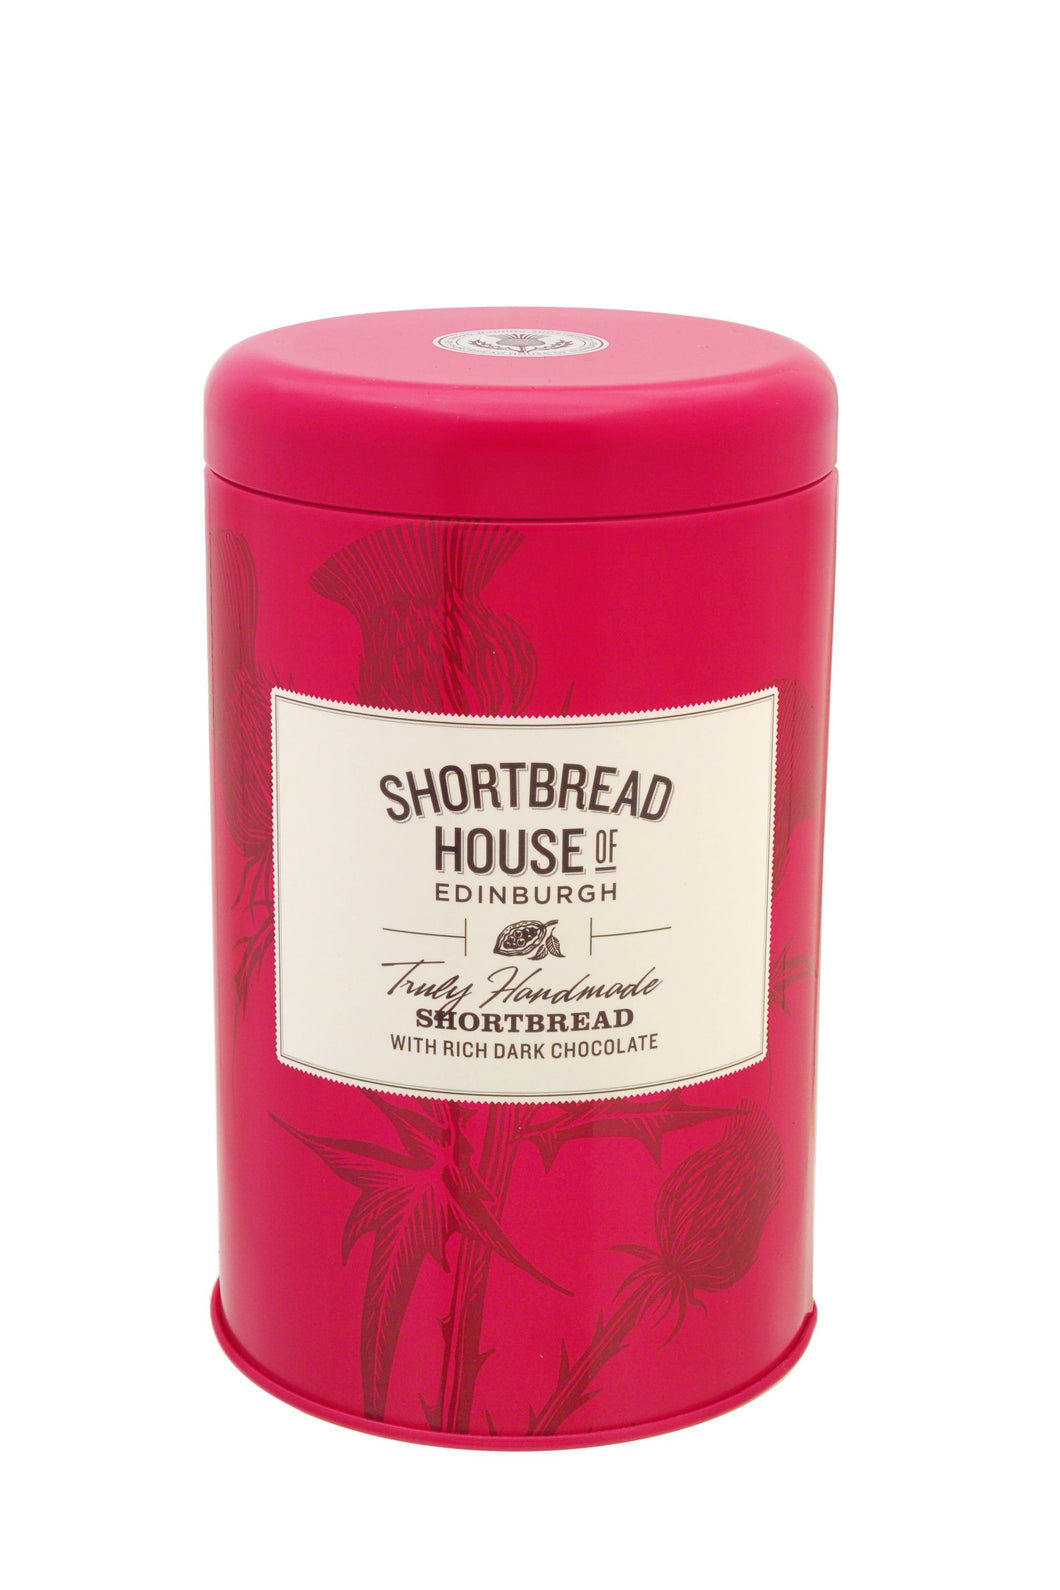 Shortbread House of Edinburgh - Shortbread Biscuits Tin, Rich Dark Chocolate